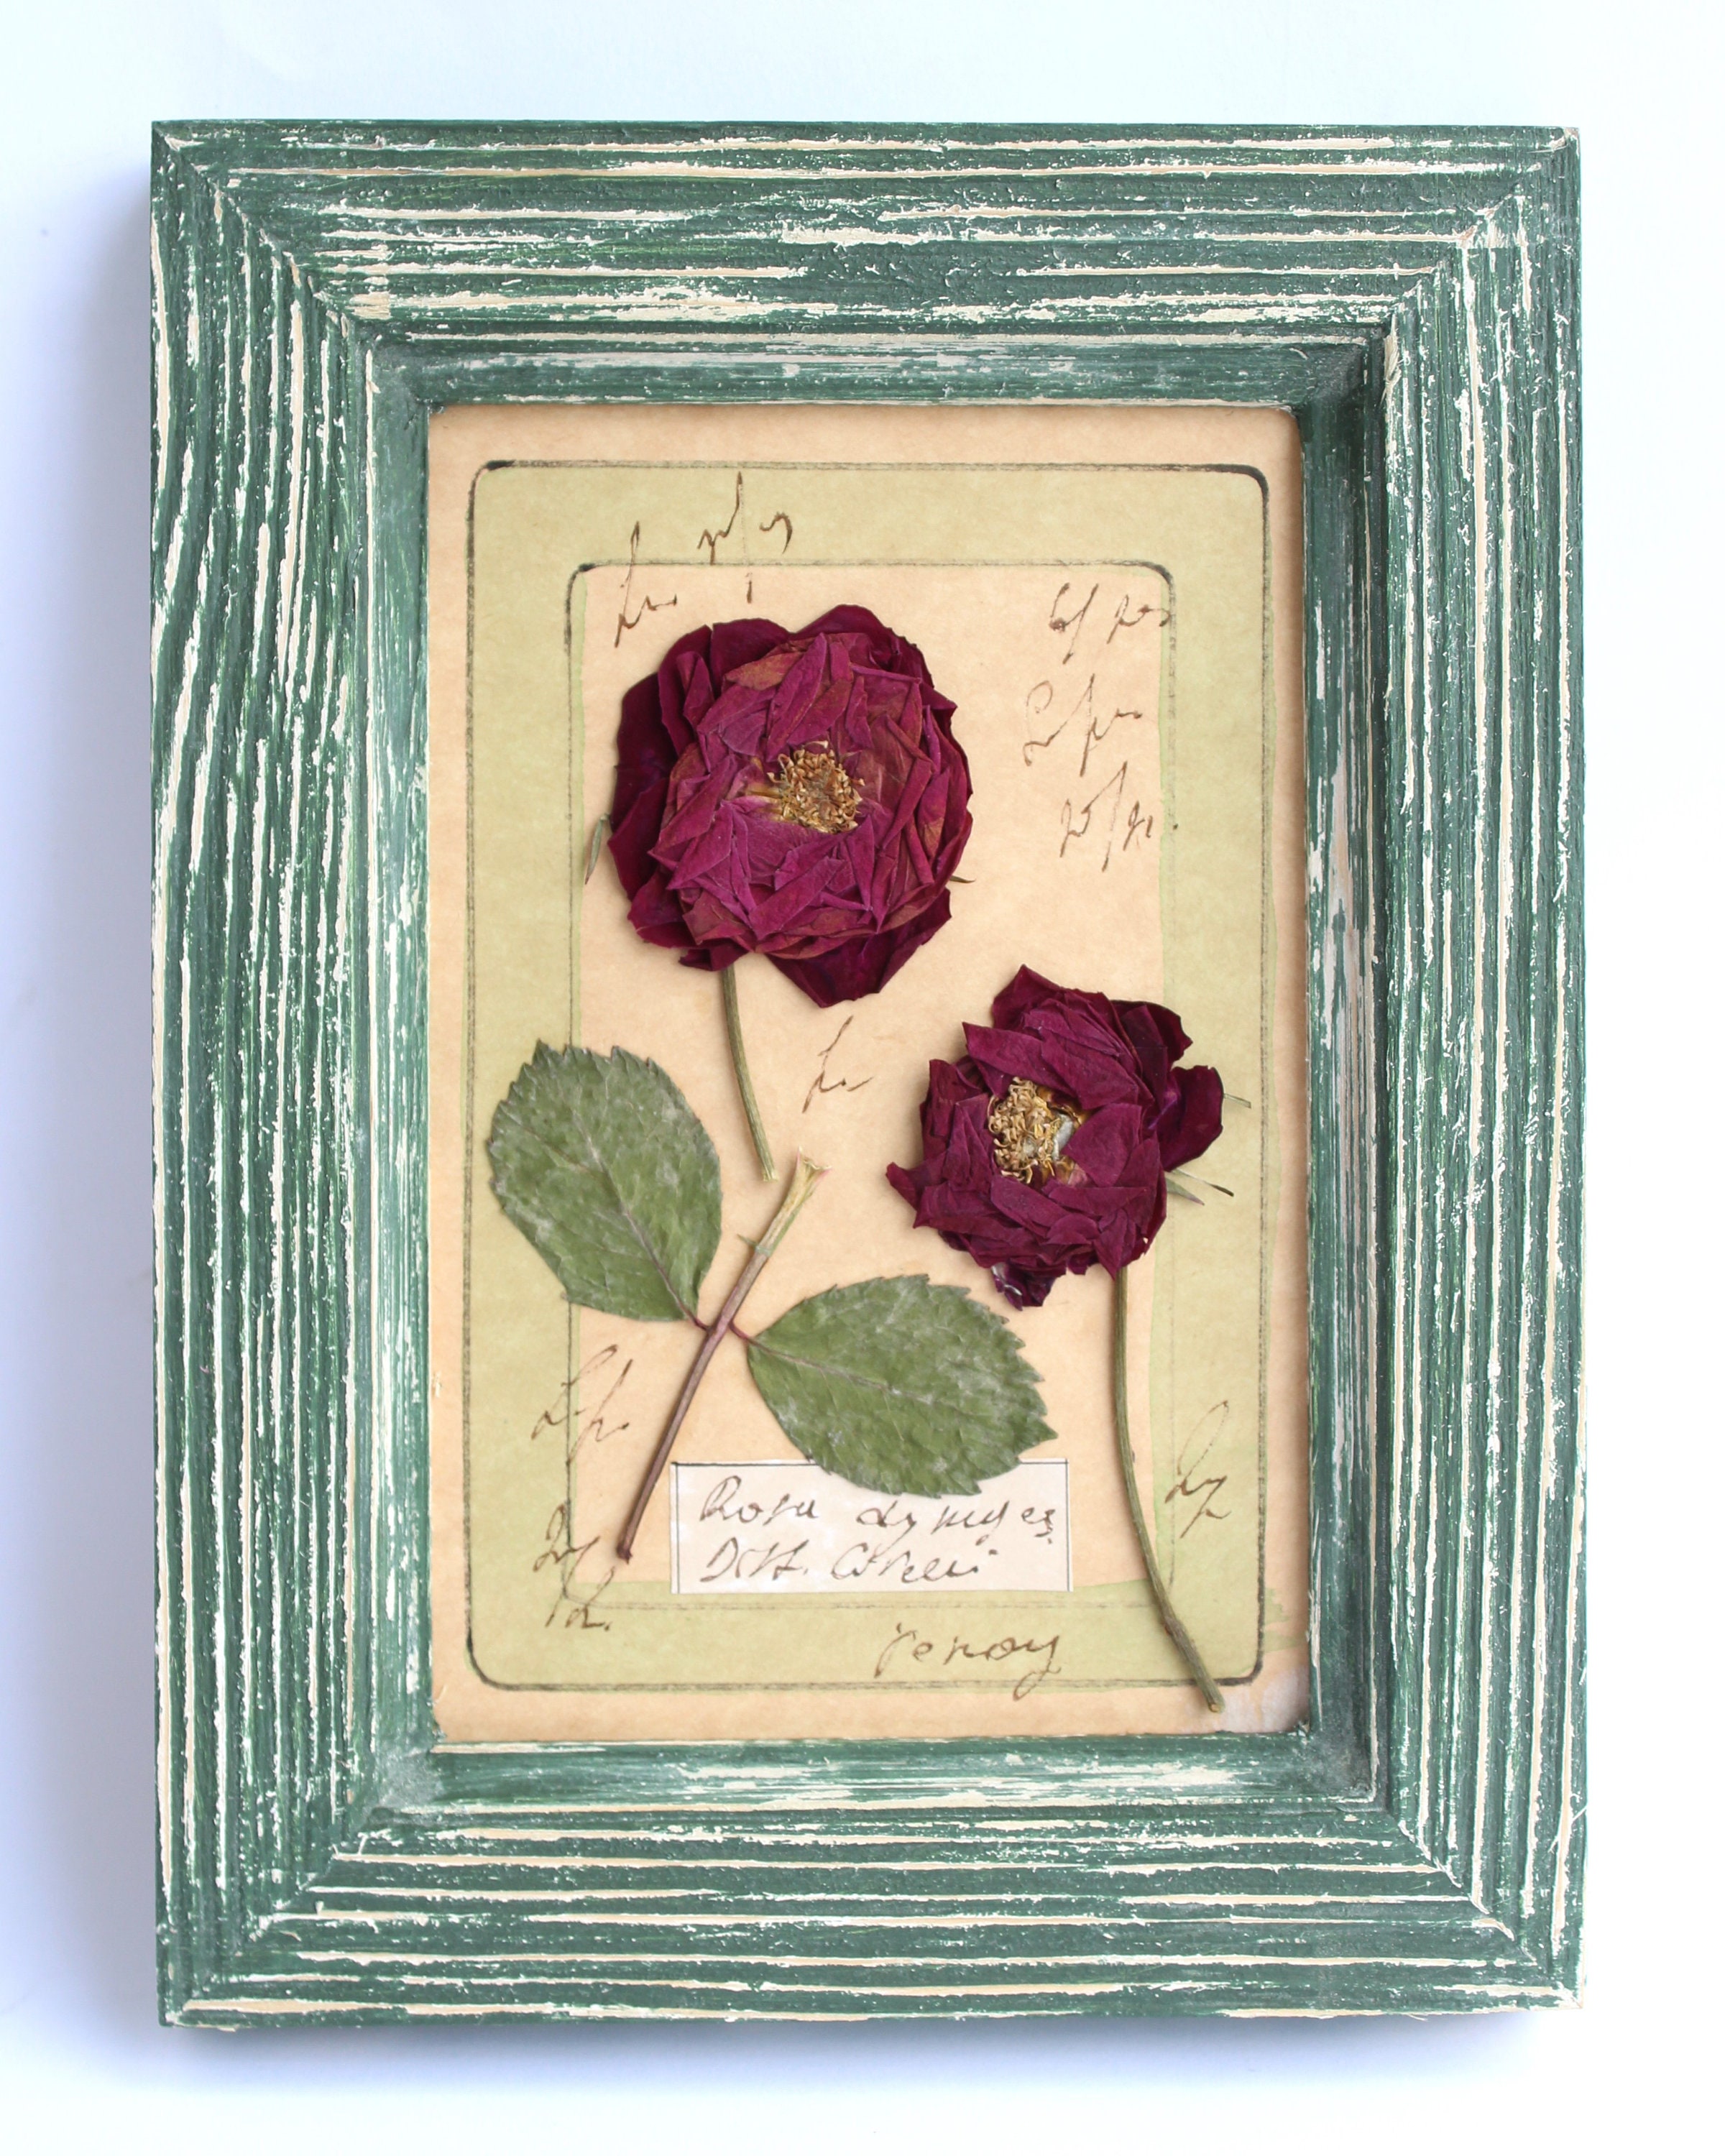 Pressed Flower Frame Custom Pressed Flower Art Dried Flower Art Handmade  Wall Decor Wedding Decor valentines Day Gift Gift for Her 